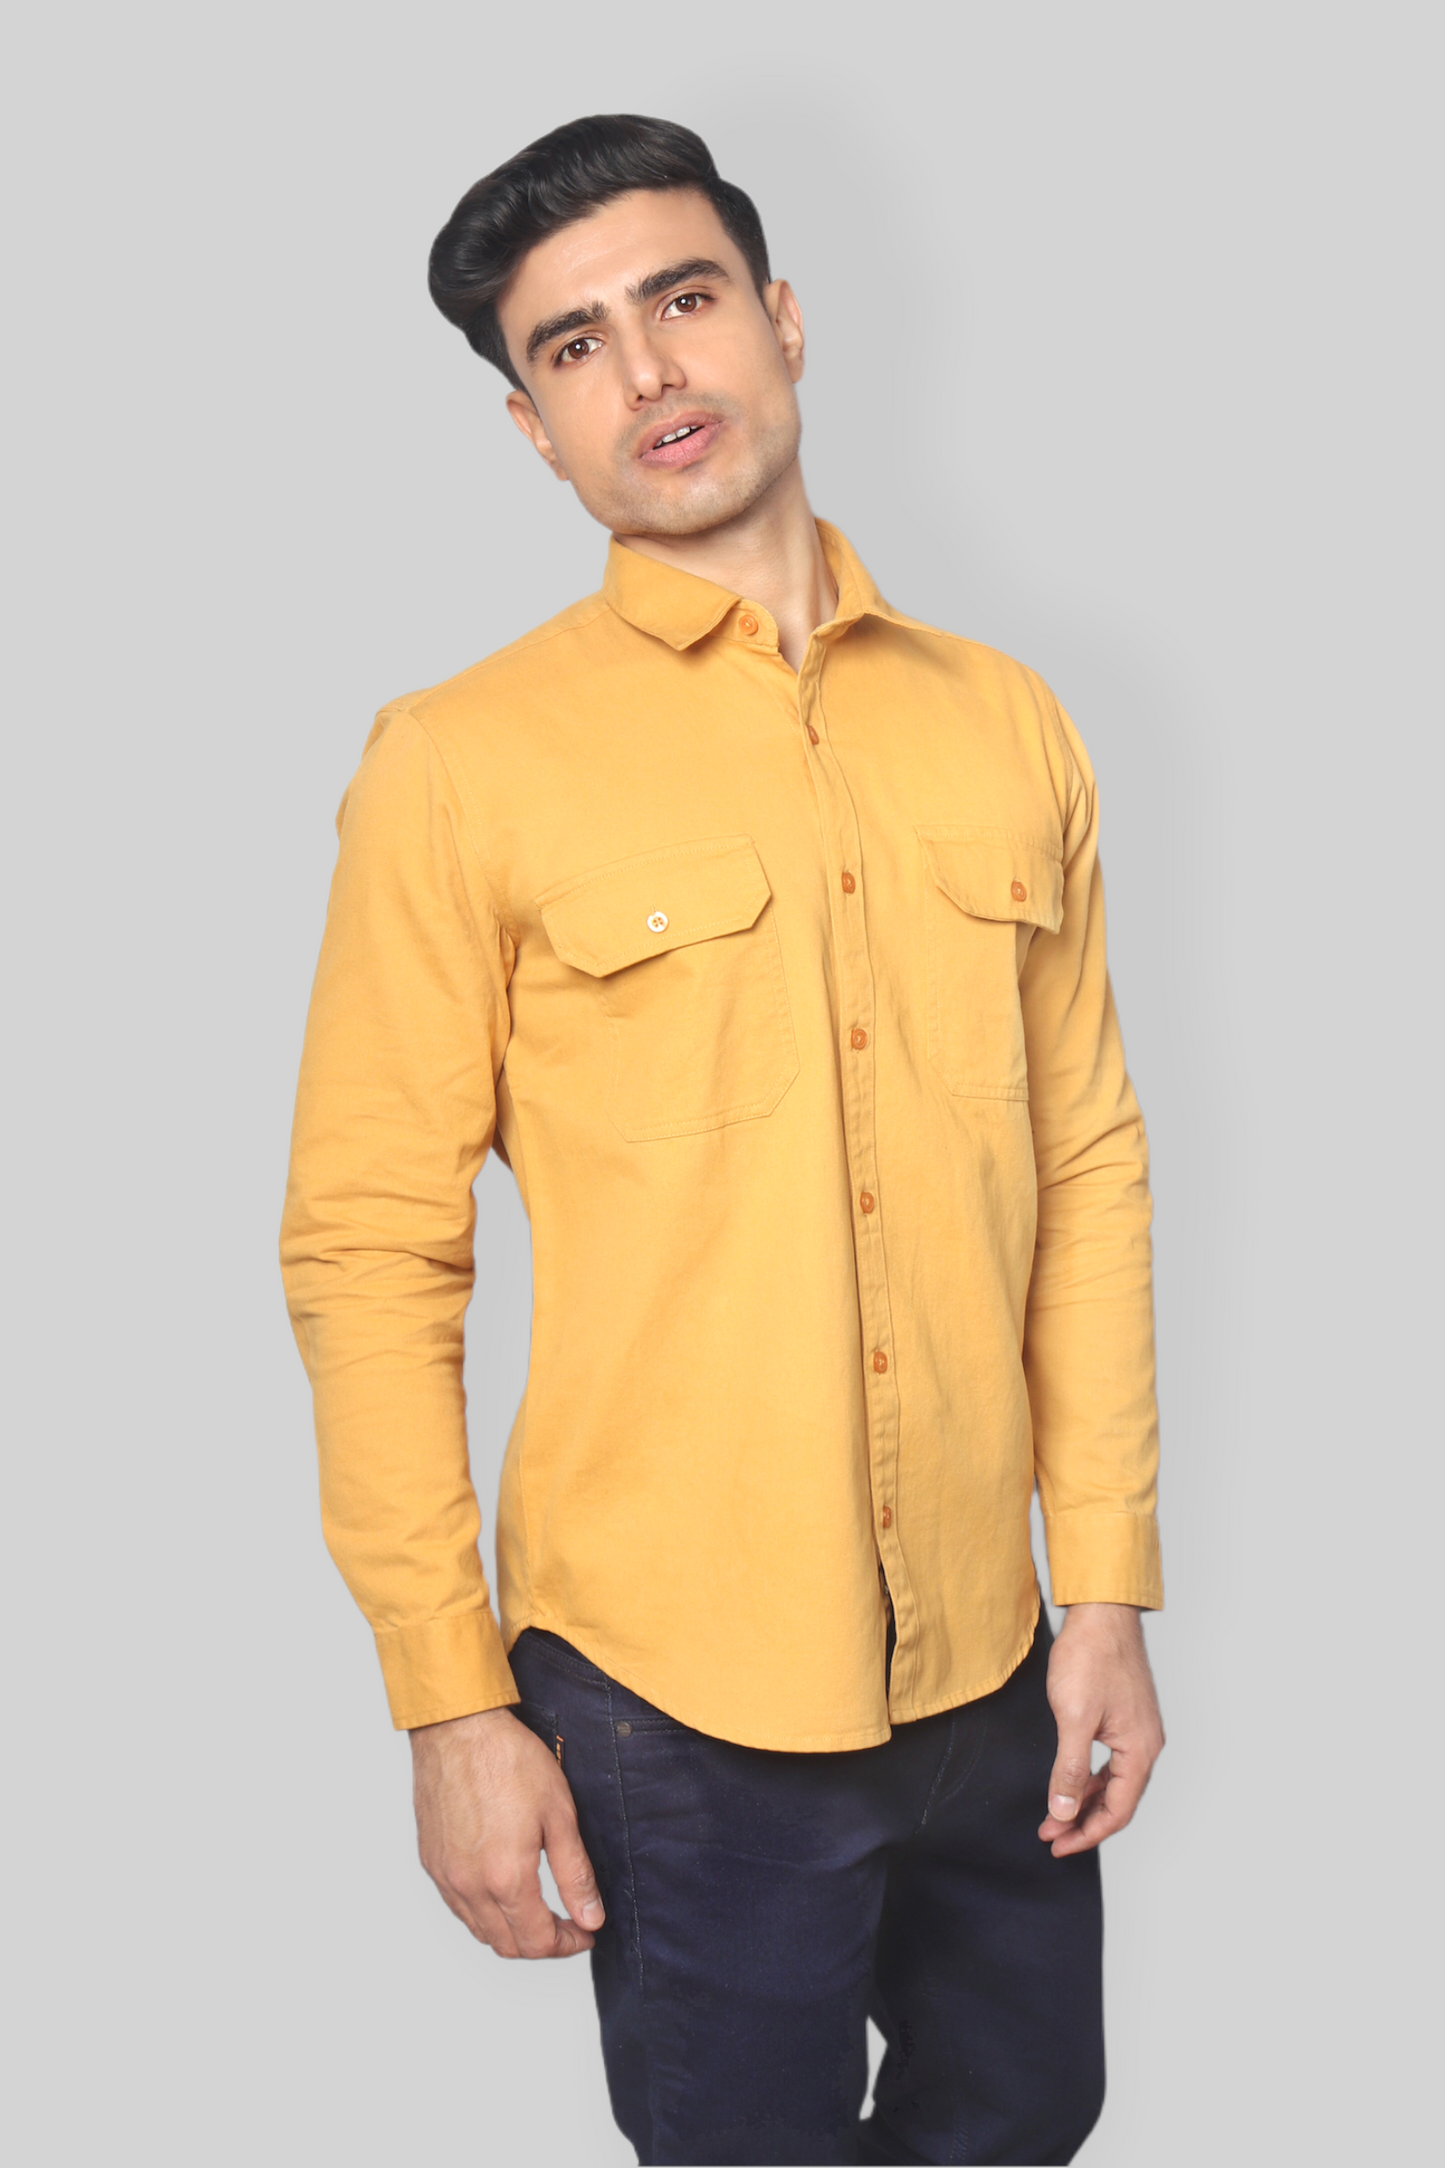 Mustard double pocket denim shirt for men’s